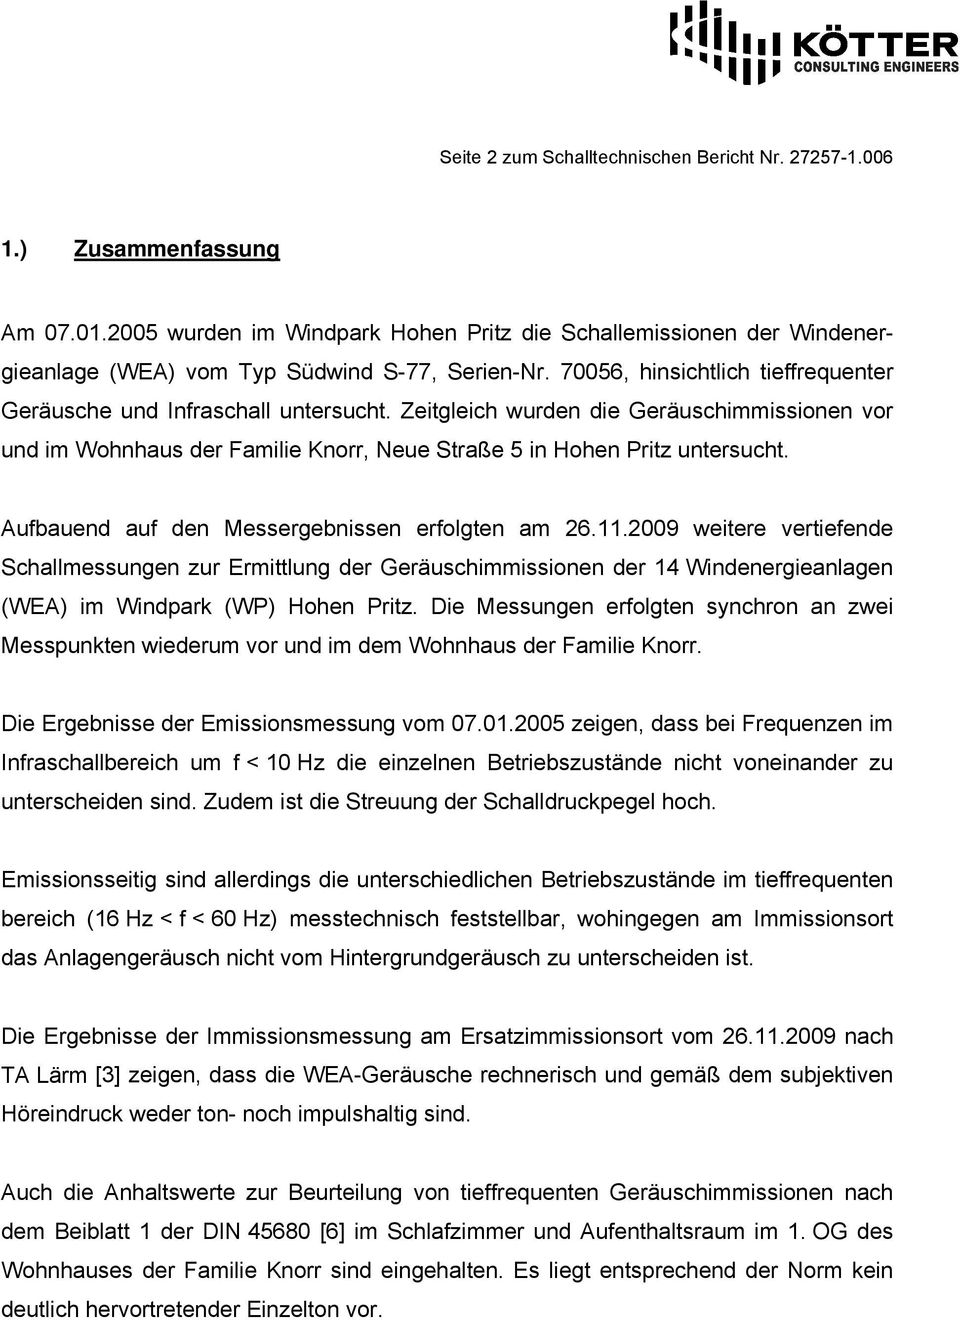 Aufbauend auf den Messergebnissen erfolgten am 26.11.29 weitere vertiefende Schallmessungen zur Ermittlung der Geräuschimmissionen der 14 Windenergieanlagen (WEA) im Windpark (WP) Hohen Pritz.